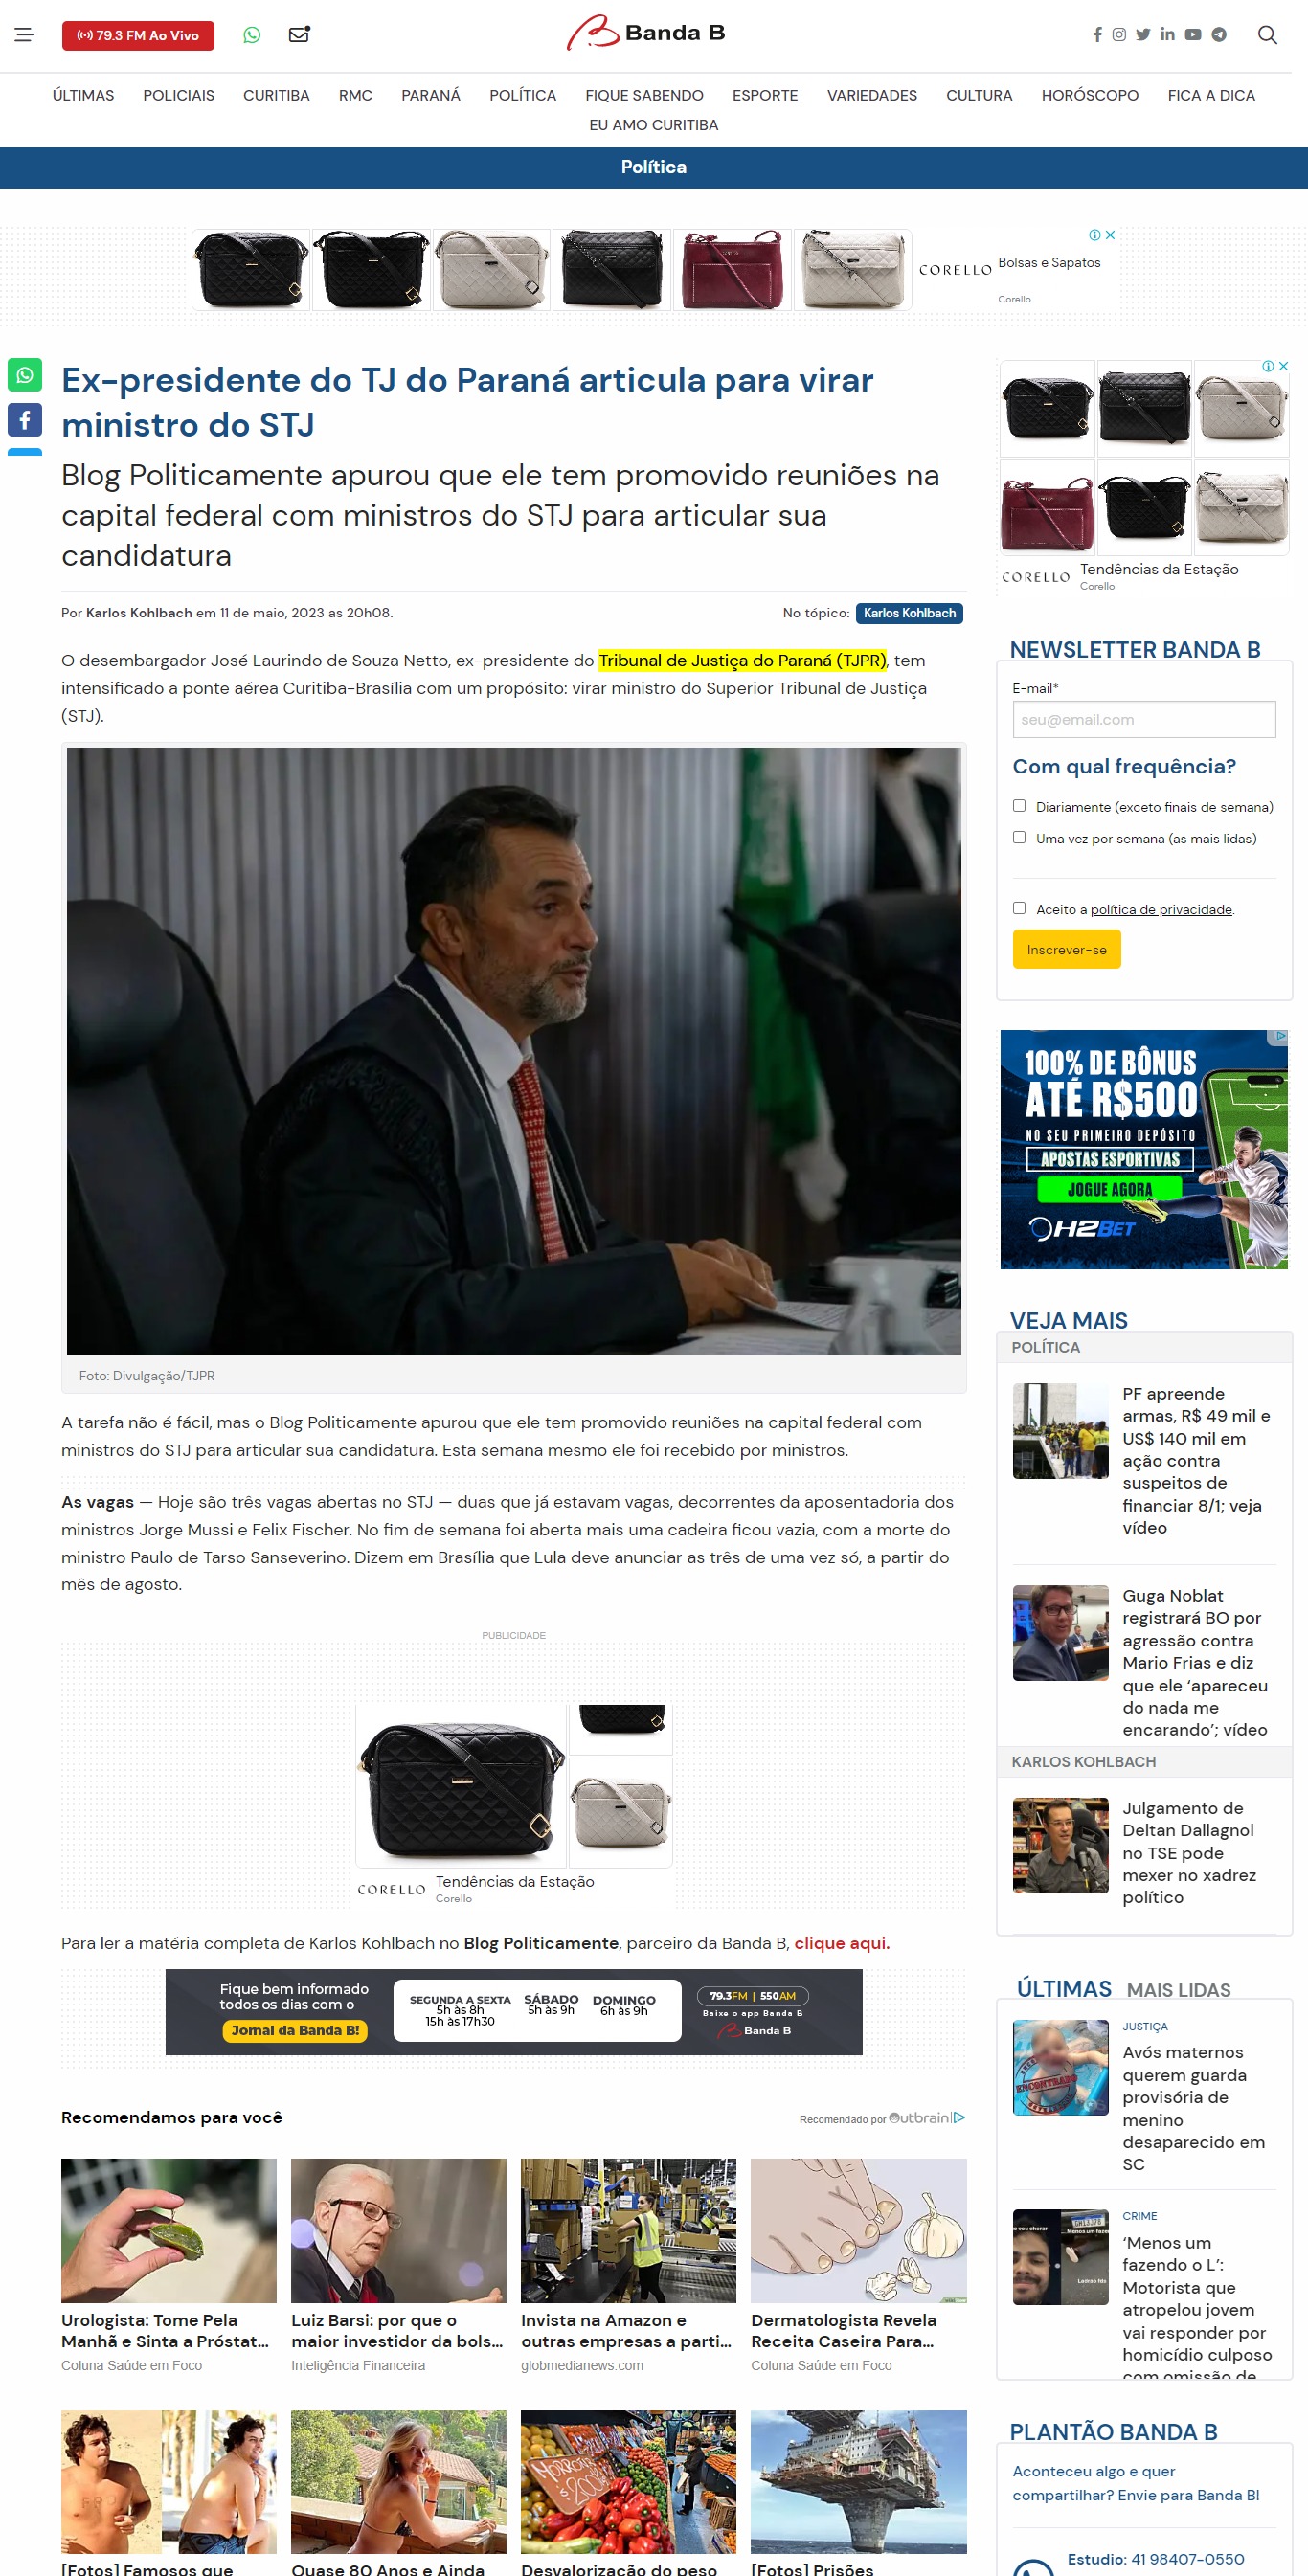 Ex-presidente do TJ do Paraná articula para virar ministro do STJ